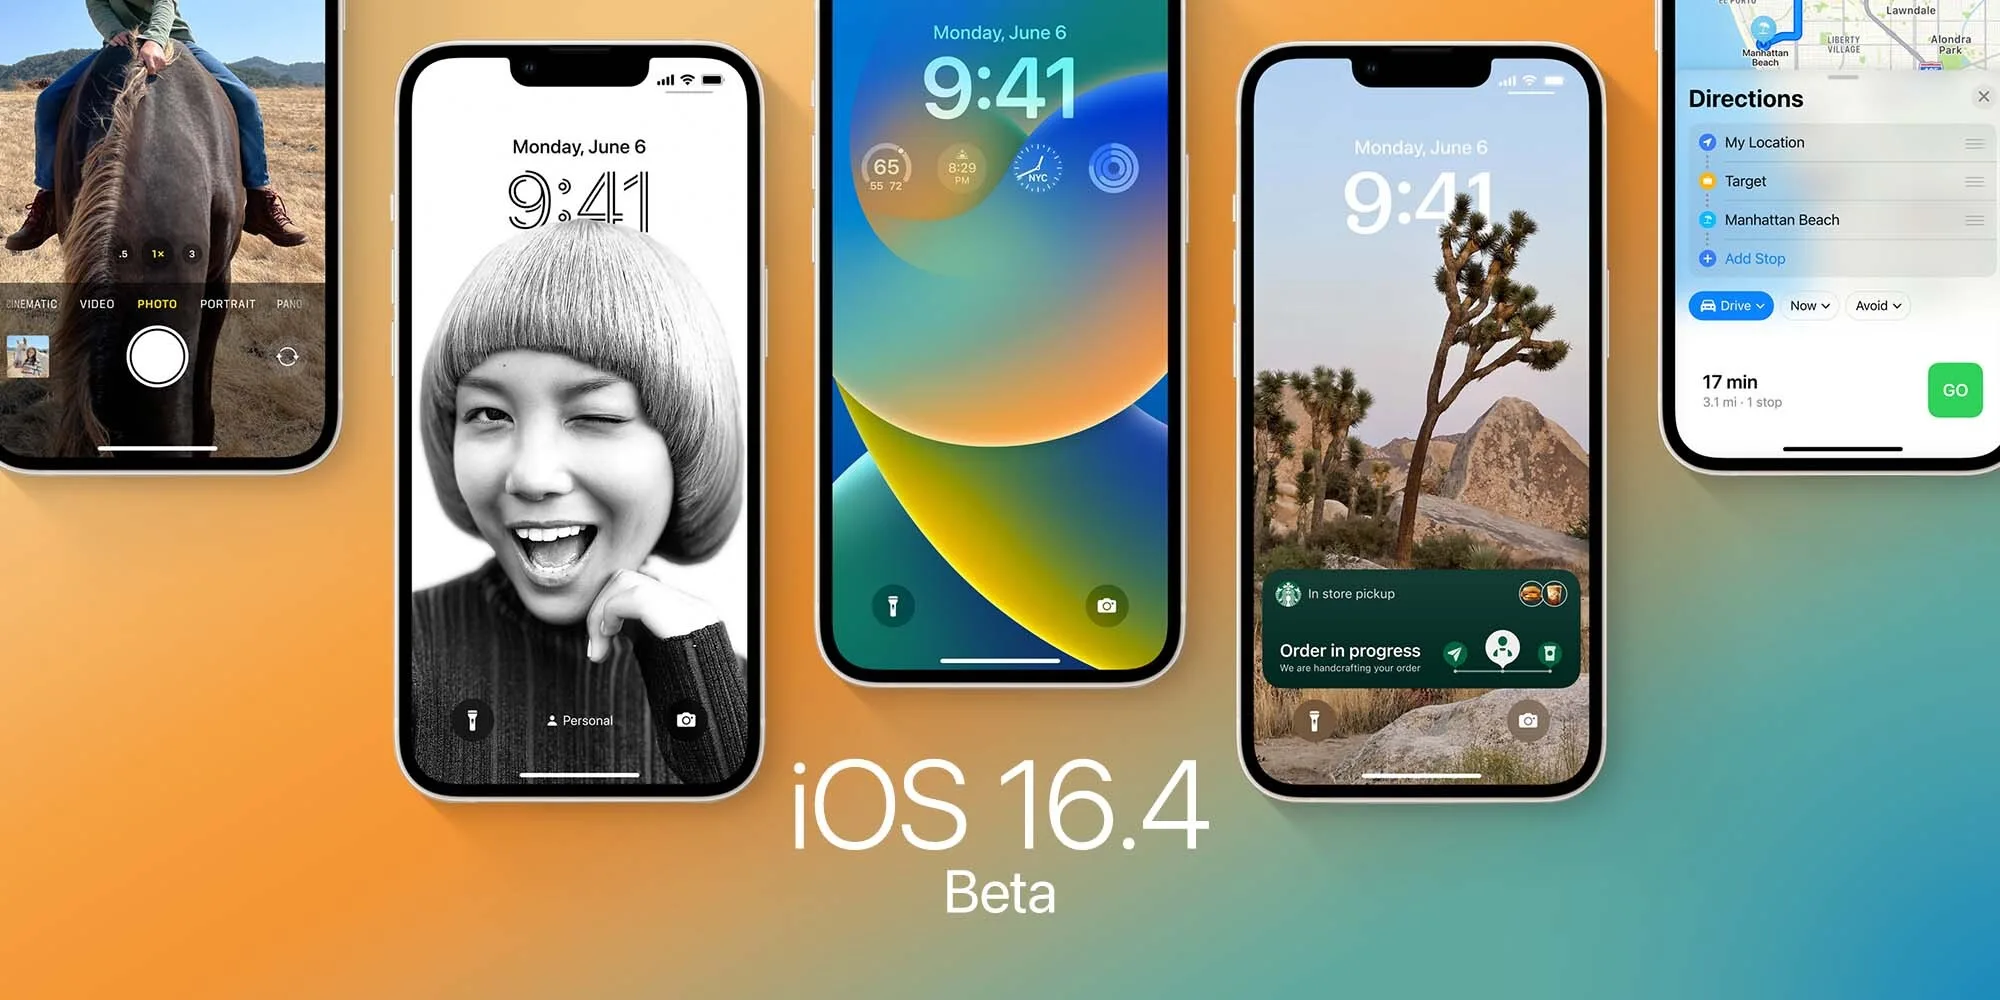 iOS 16.4 Beta Update